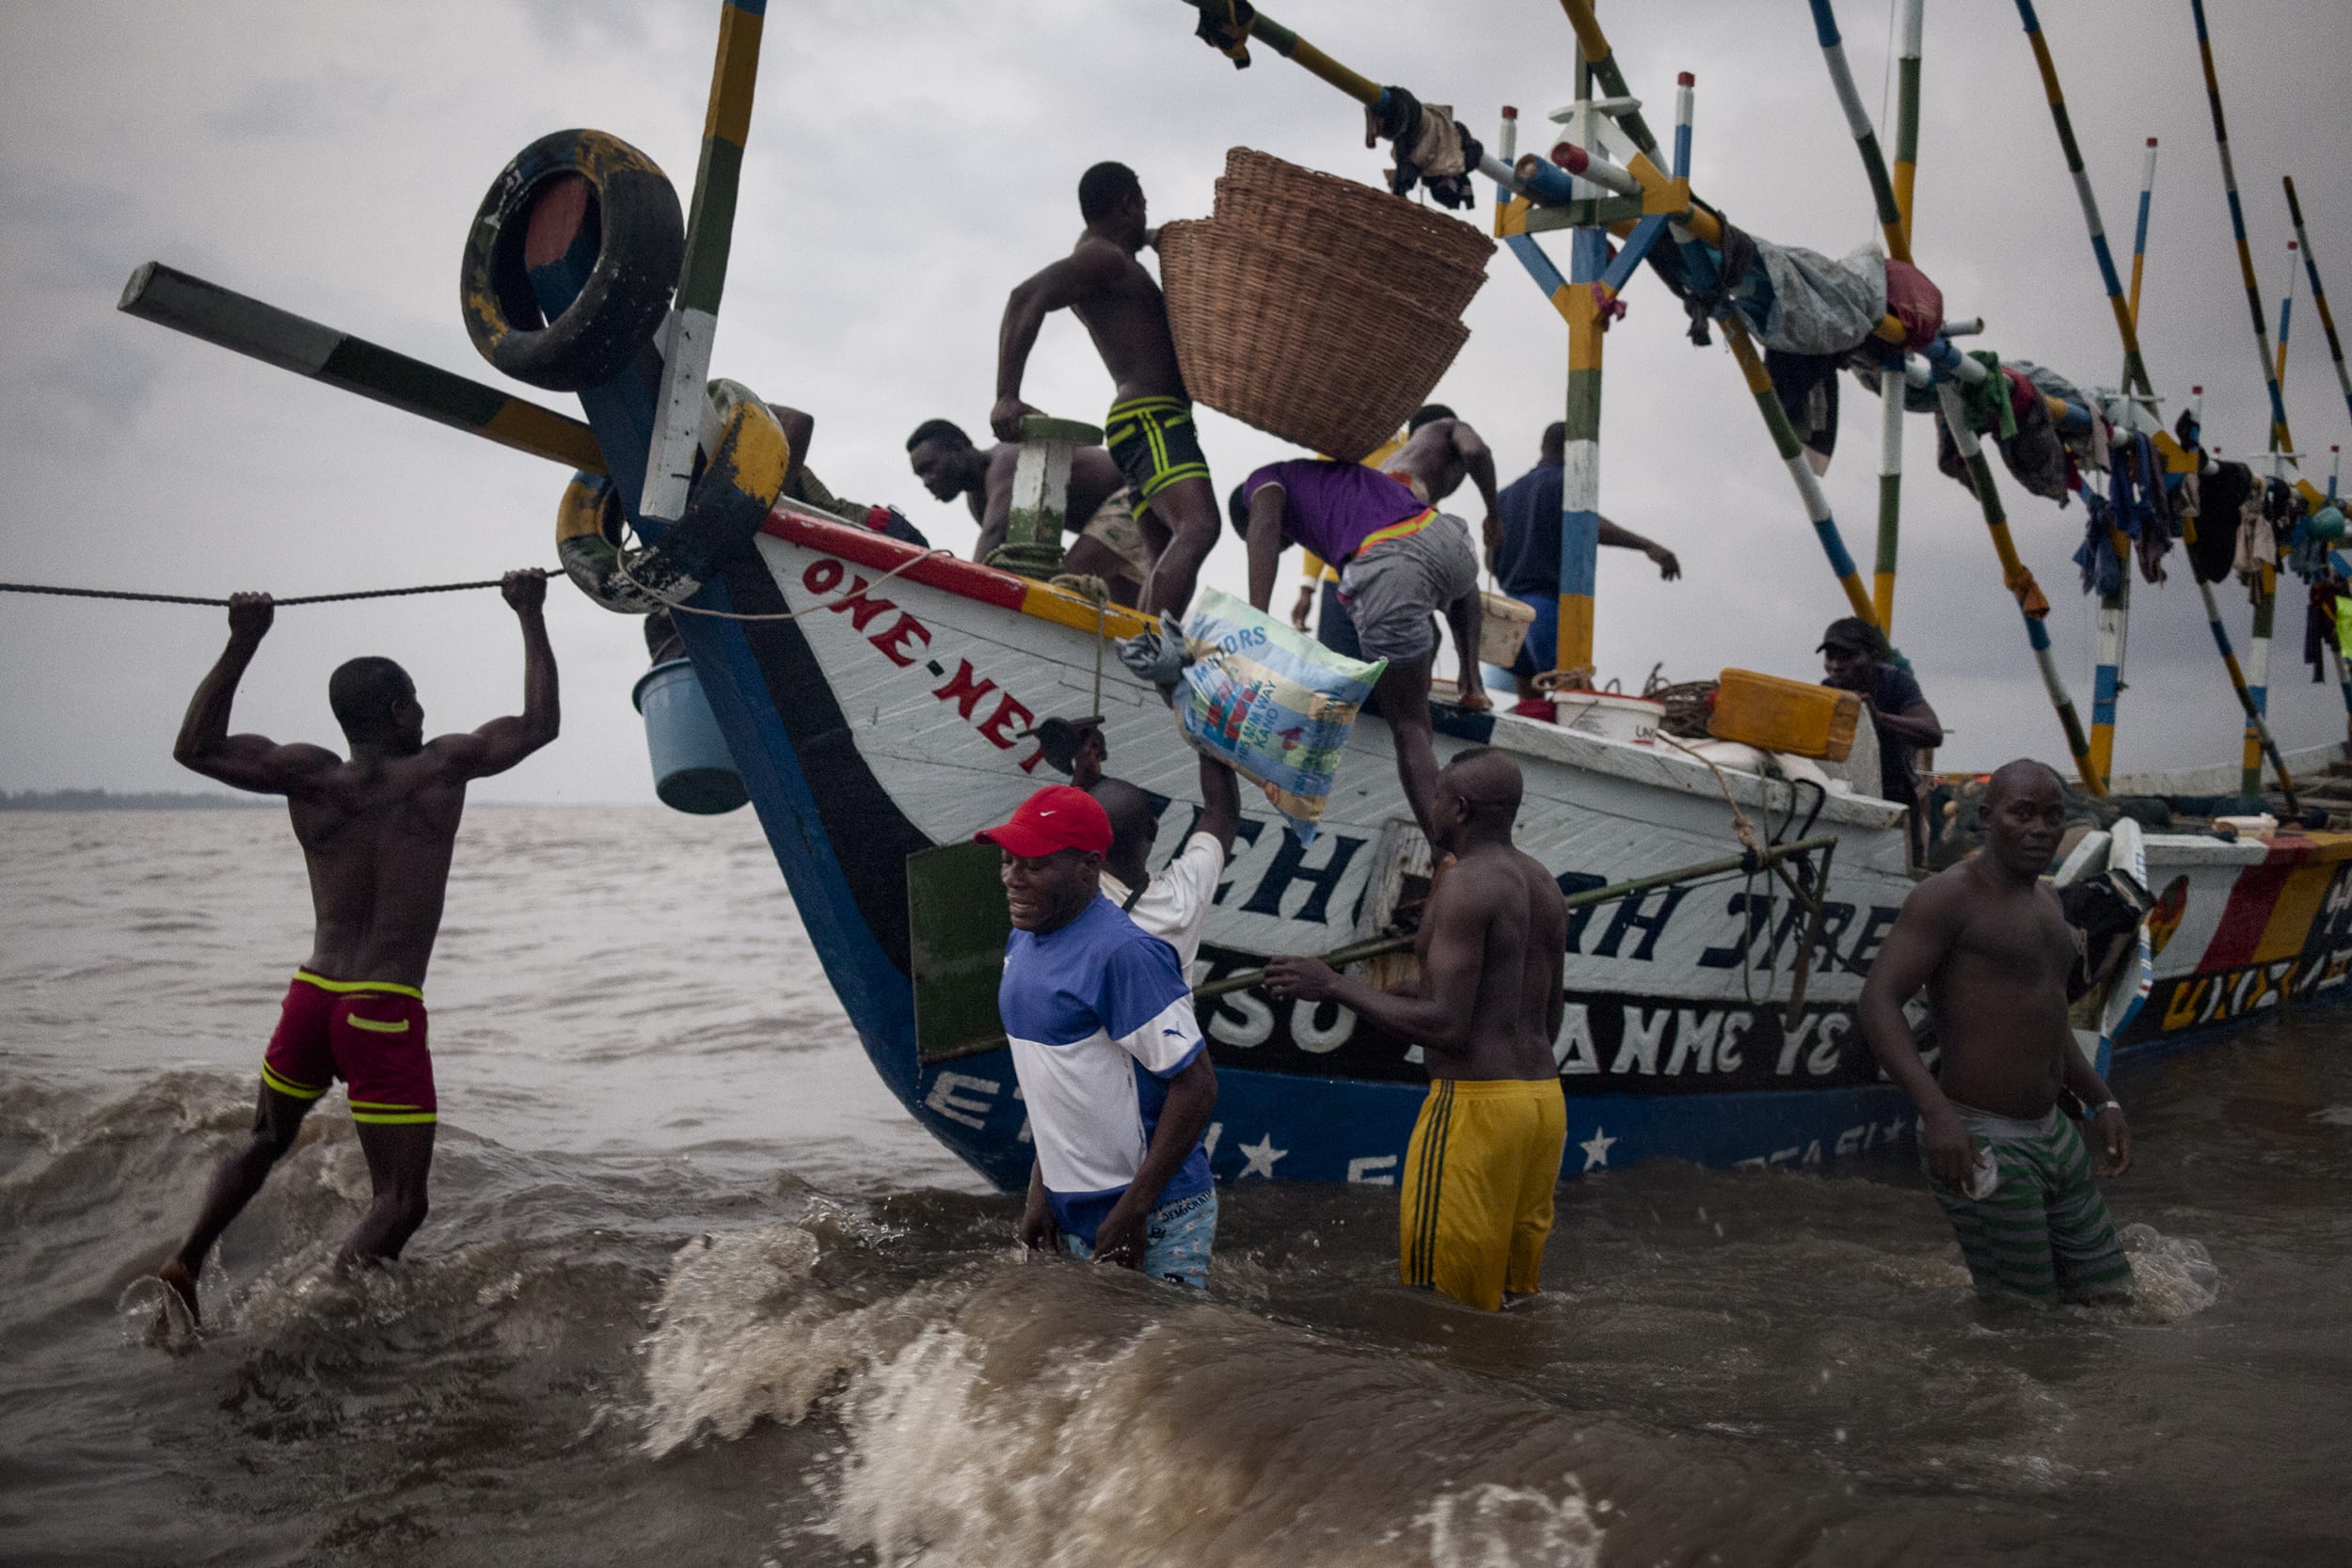 The Lord est un Awasha, un bateau ghanéen qui appartient à Alfred, un béninois, part tôt le matin de la plage de Yoyo. Il va essayer d’aller pêcher non loin, mais s’il ne fait que des petites prises, alors il partira dans un autre camp de pêcheurs d’Afrique de l’ouest, près de Limbe, au Cameroun.